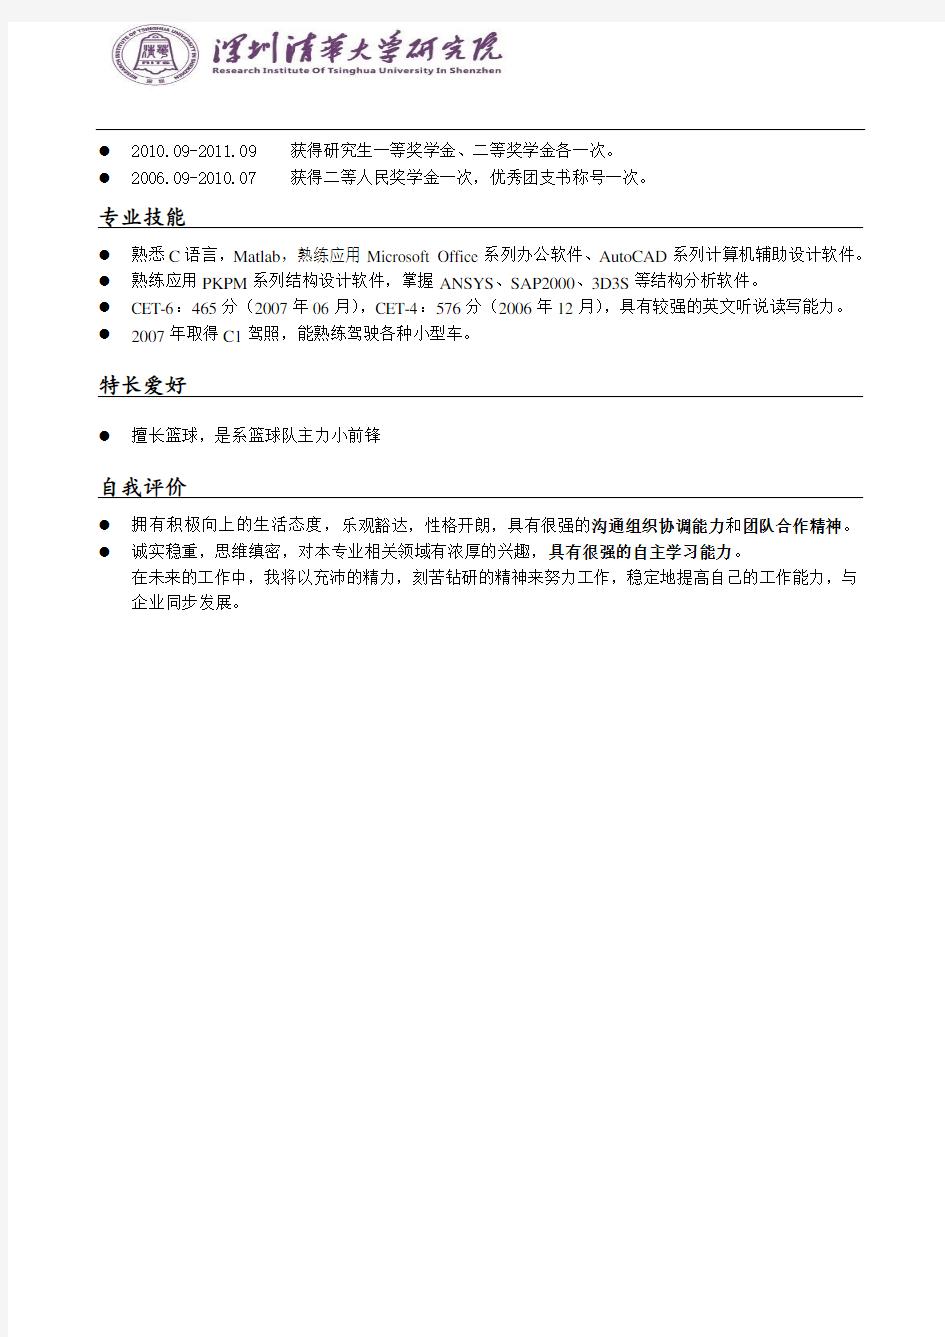 清华大学深圳研究生院简历模板(版式2+logo+横线标题)